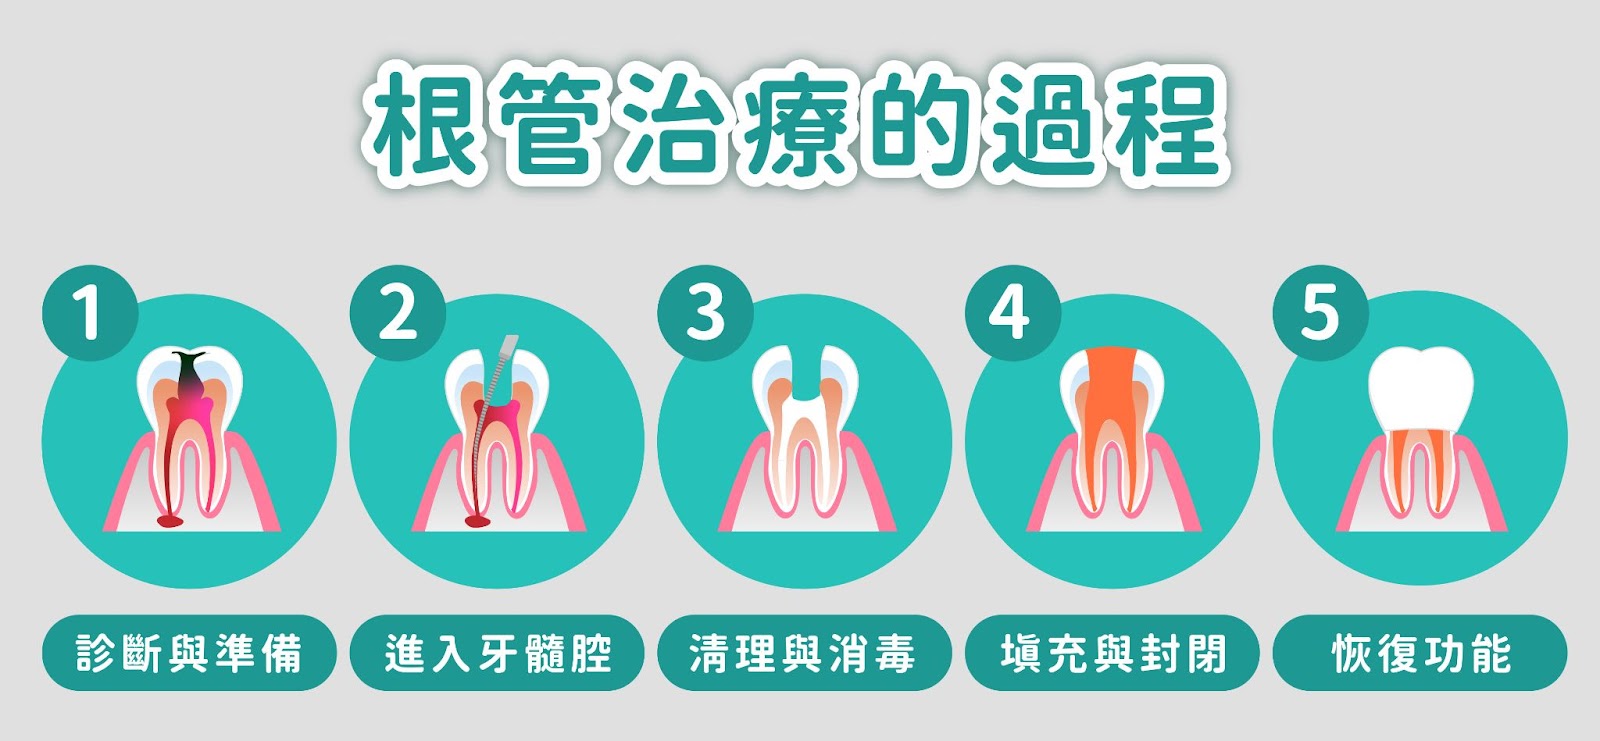 判斷是否需要根管治療是一個複雜的過程，涉及臨床症狀、檢查結果以及影像學評估。如果牙髓感染或壞死，根管治療通常是拯救牙齒的最佳選擇。